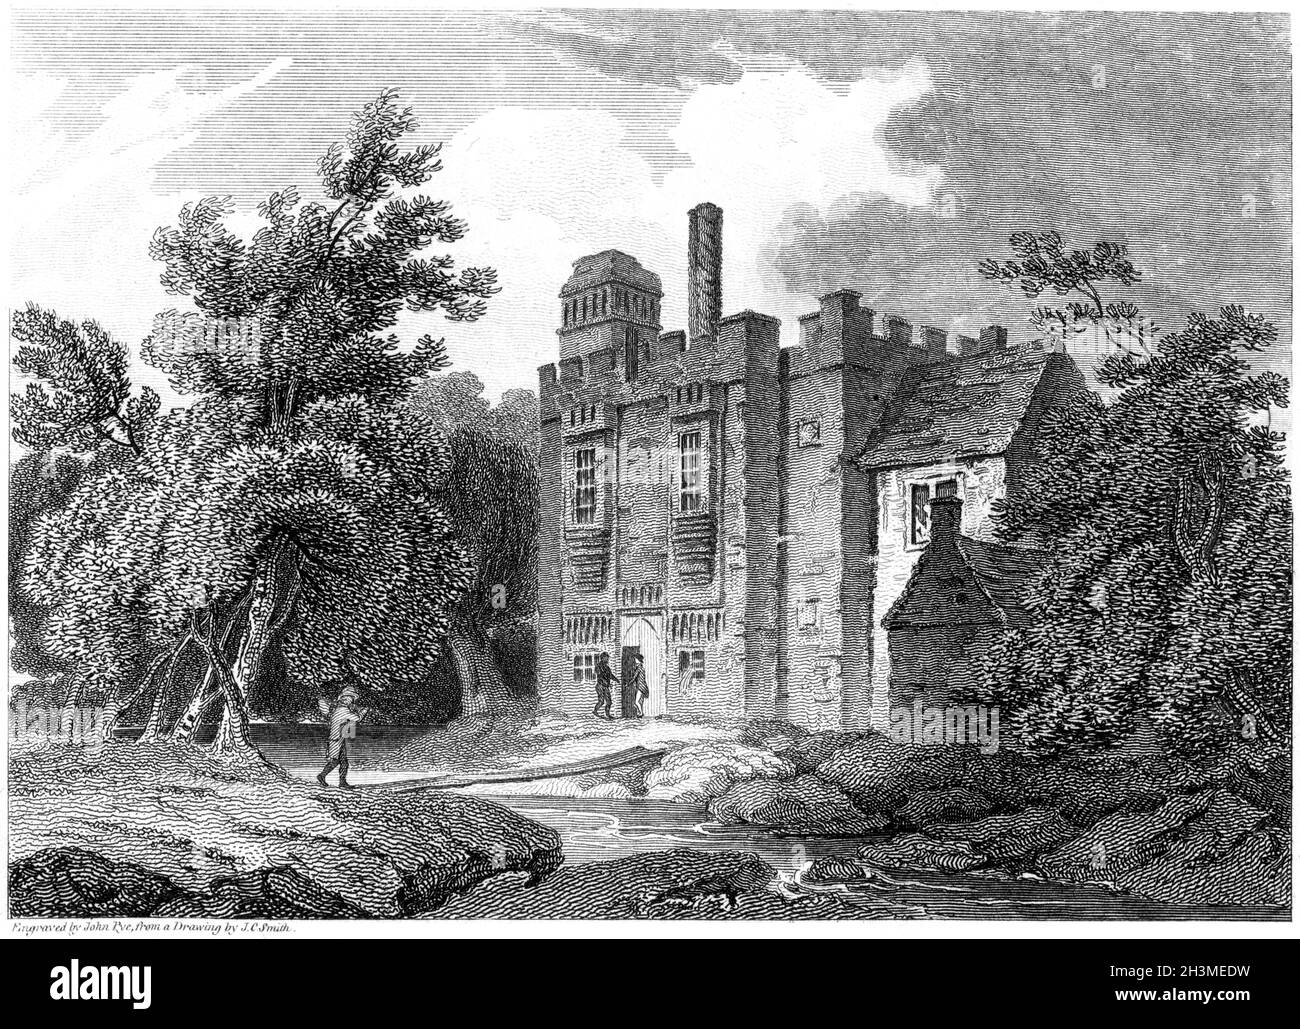 Une gravure de la Rye House, Hertfordshire UK scanné à haute résolution à partir d'un livre imprimé en 1812.Je pensais libre de droits d'auteur. Banque D'Images